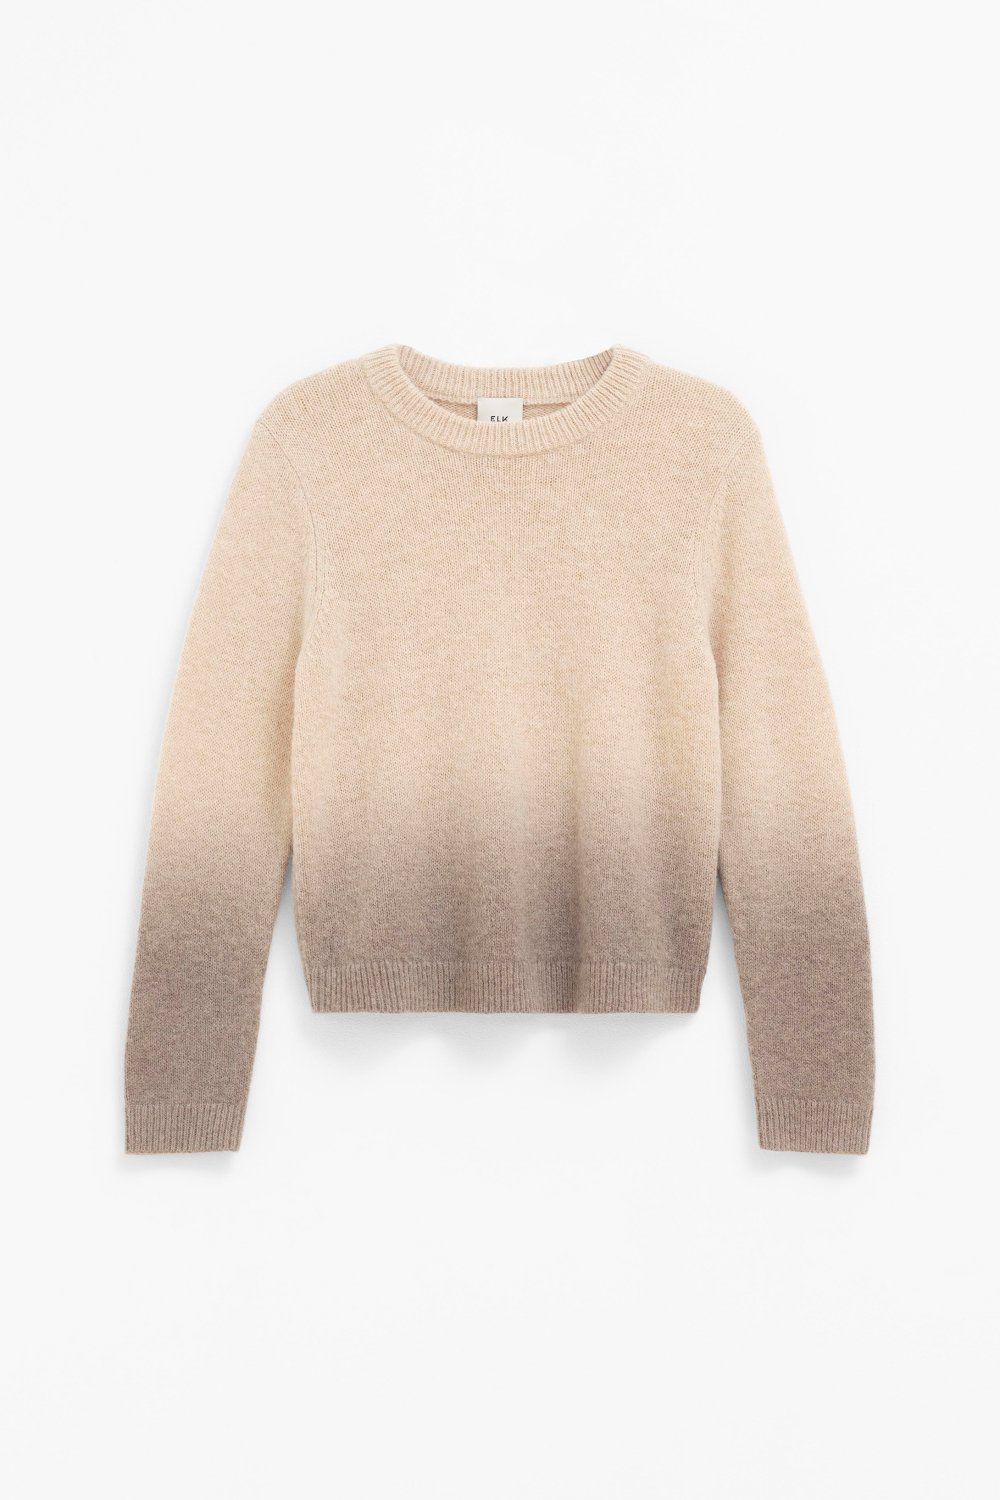 elk-ombre-sweater-ecru-brown 5